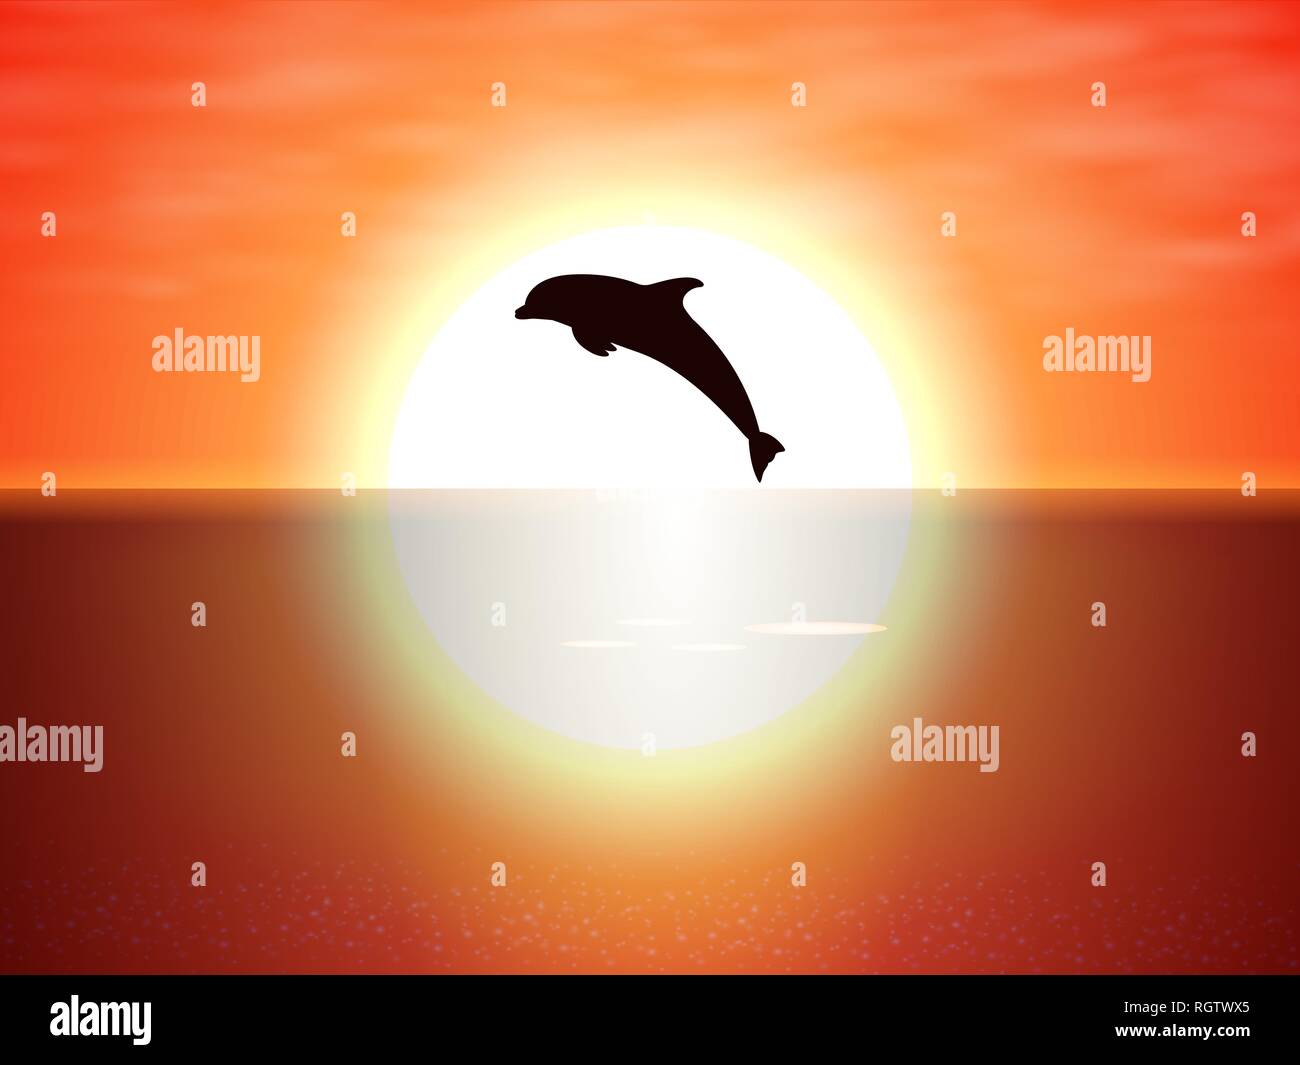 Le saut du dauphin sur l'eau du coucher de soleil Illustration de Vecteur